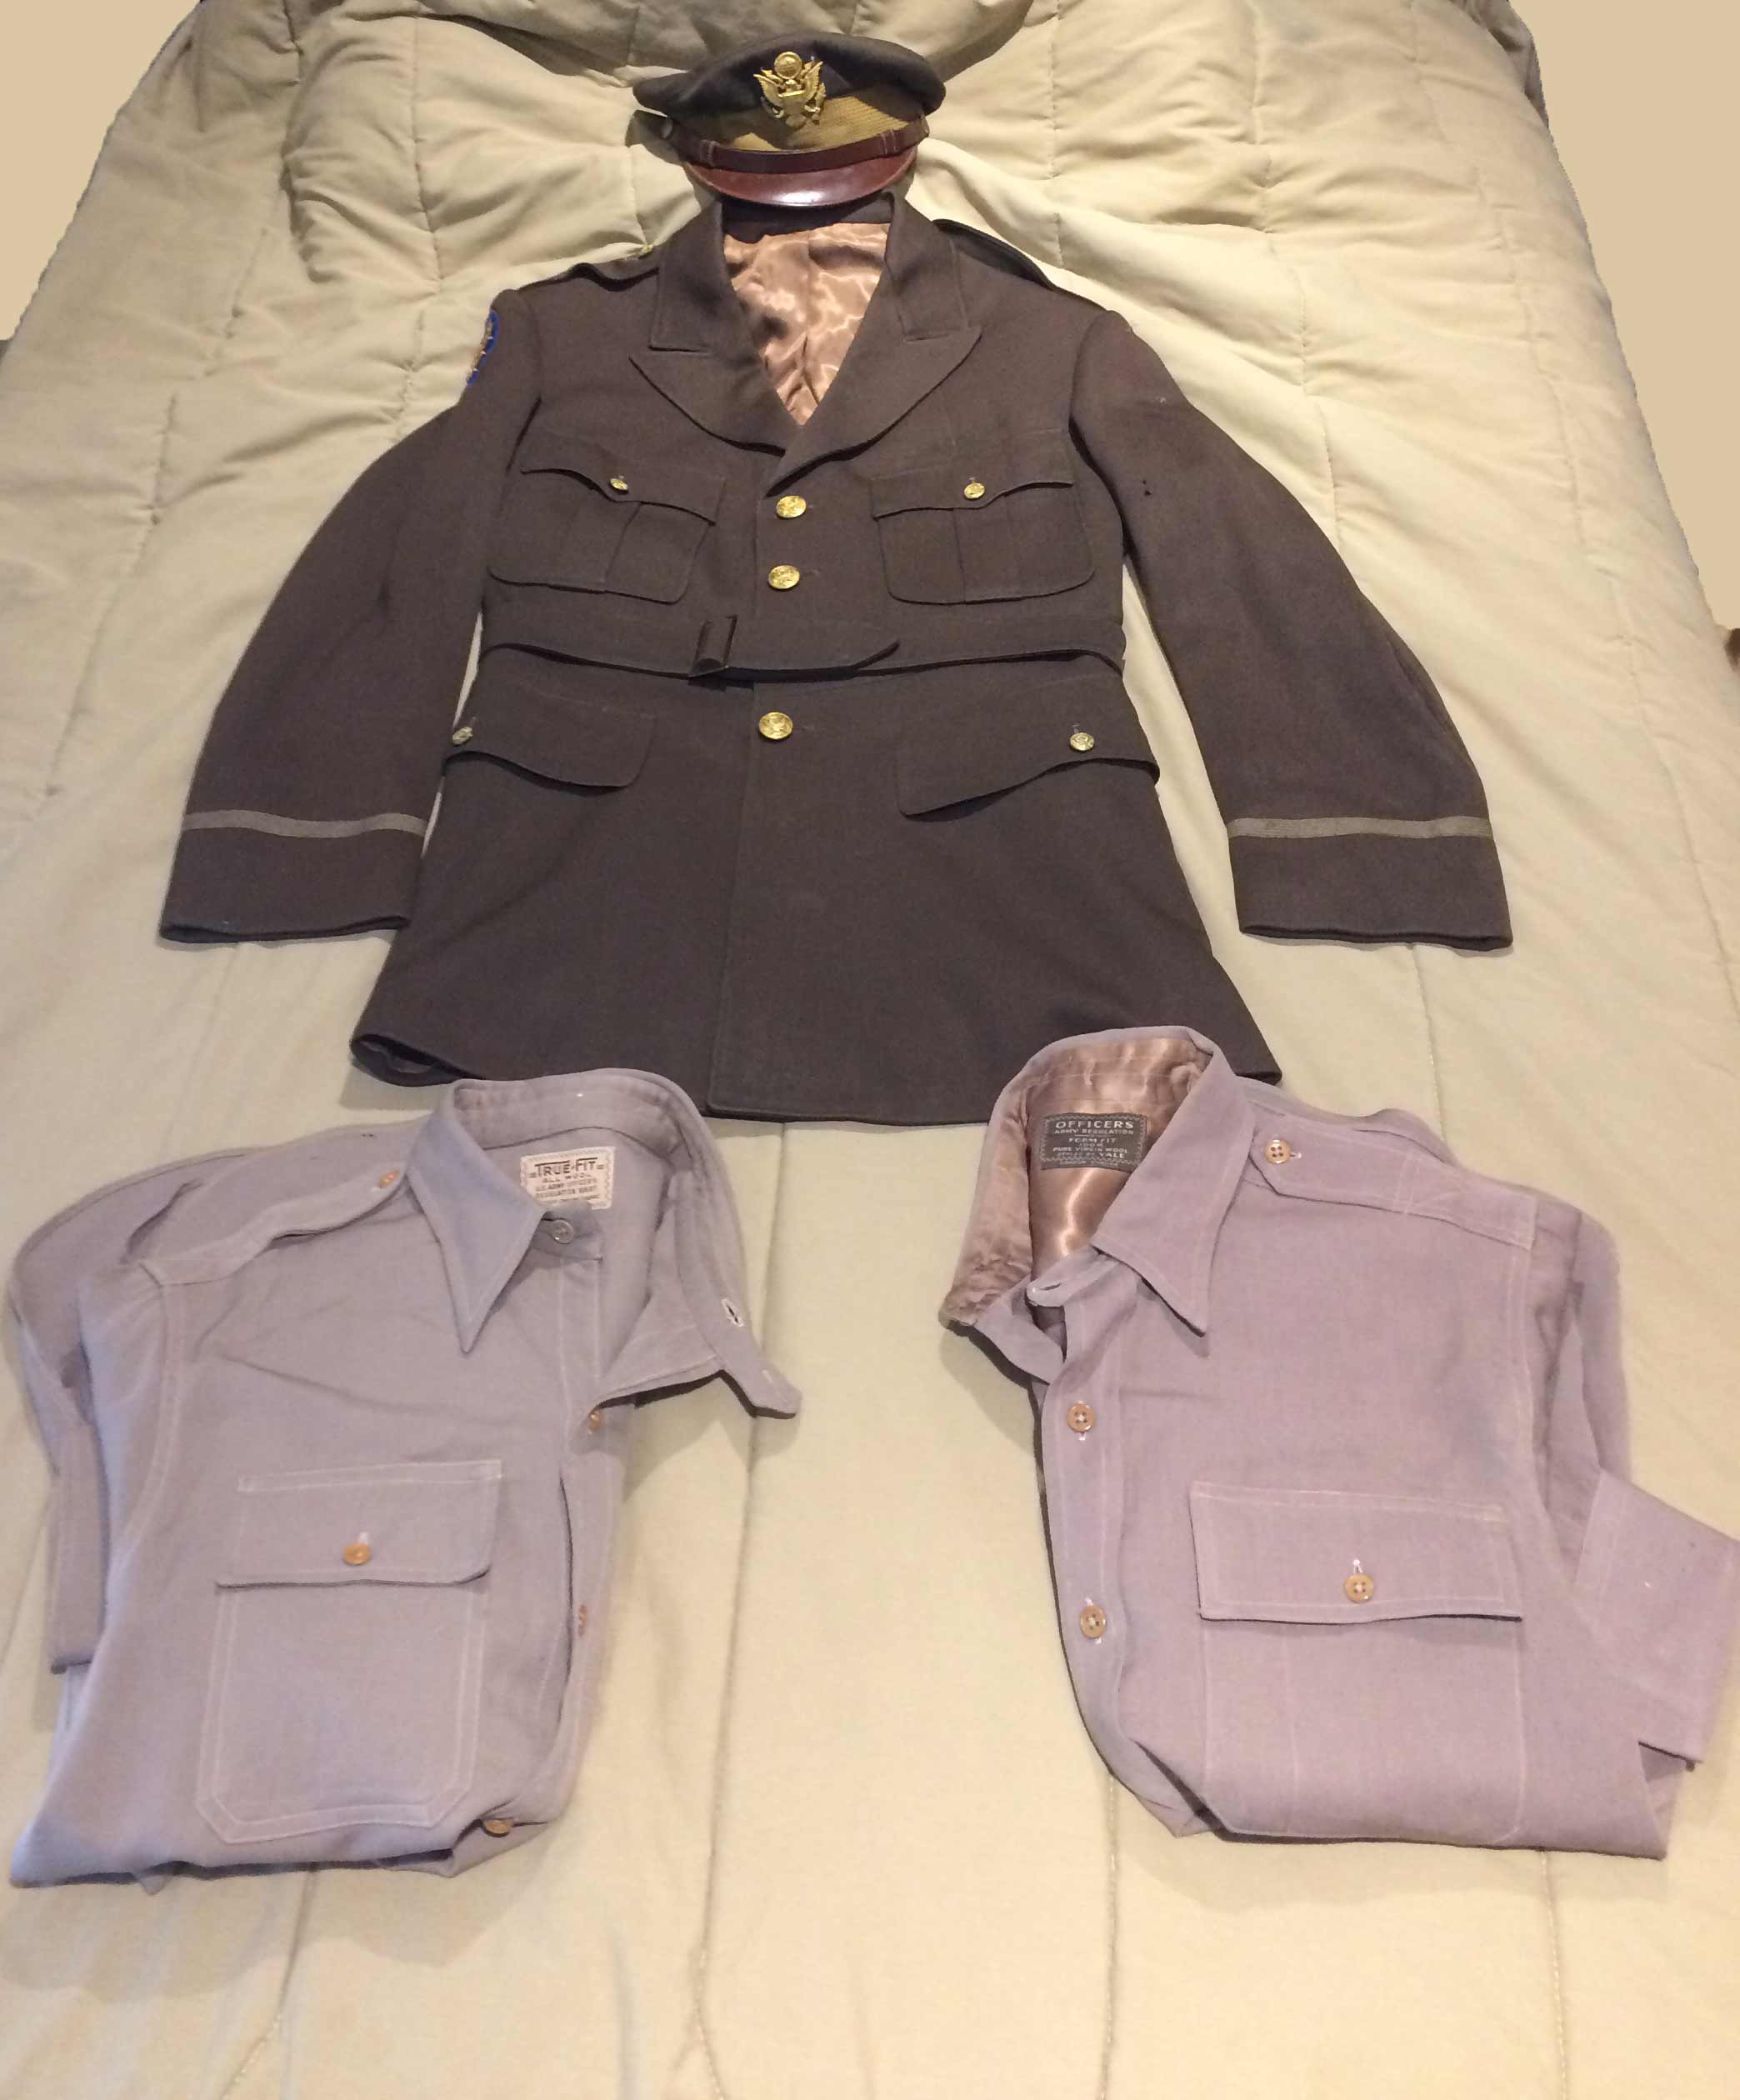 USAAF Dress Uniforms (1944-1945) | KommandoPost.com